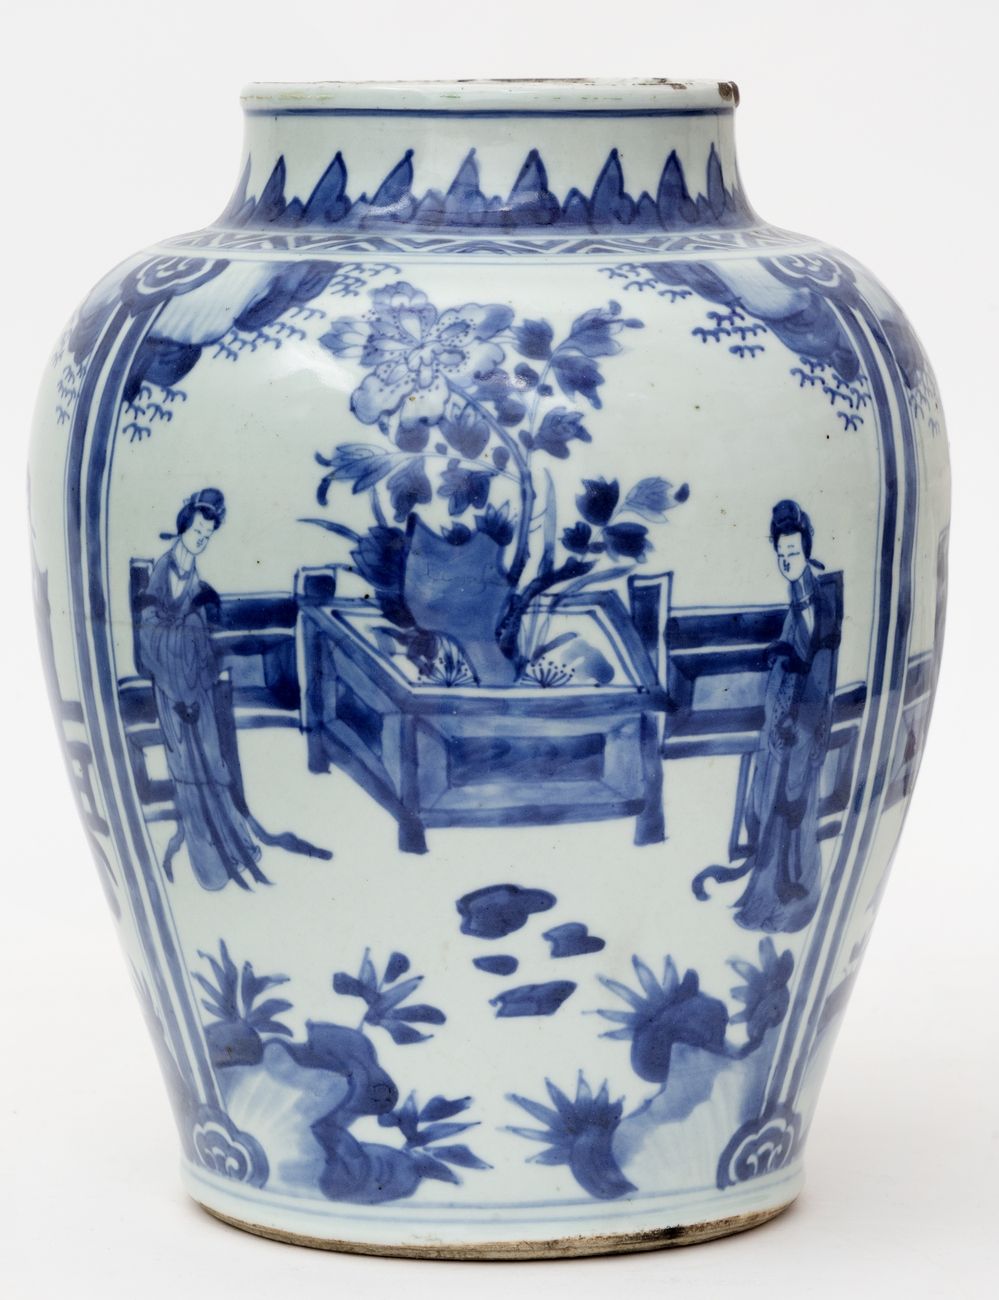 Null 中国，过渡时期，17世纪。
蓝白珐琅装饰的宫廷女郎瓷瓶。
高度 : 30 cm
(颈部有两个缺口和划痕)